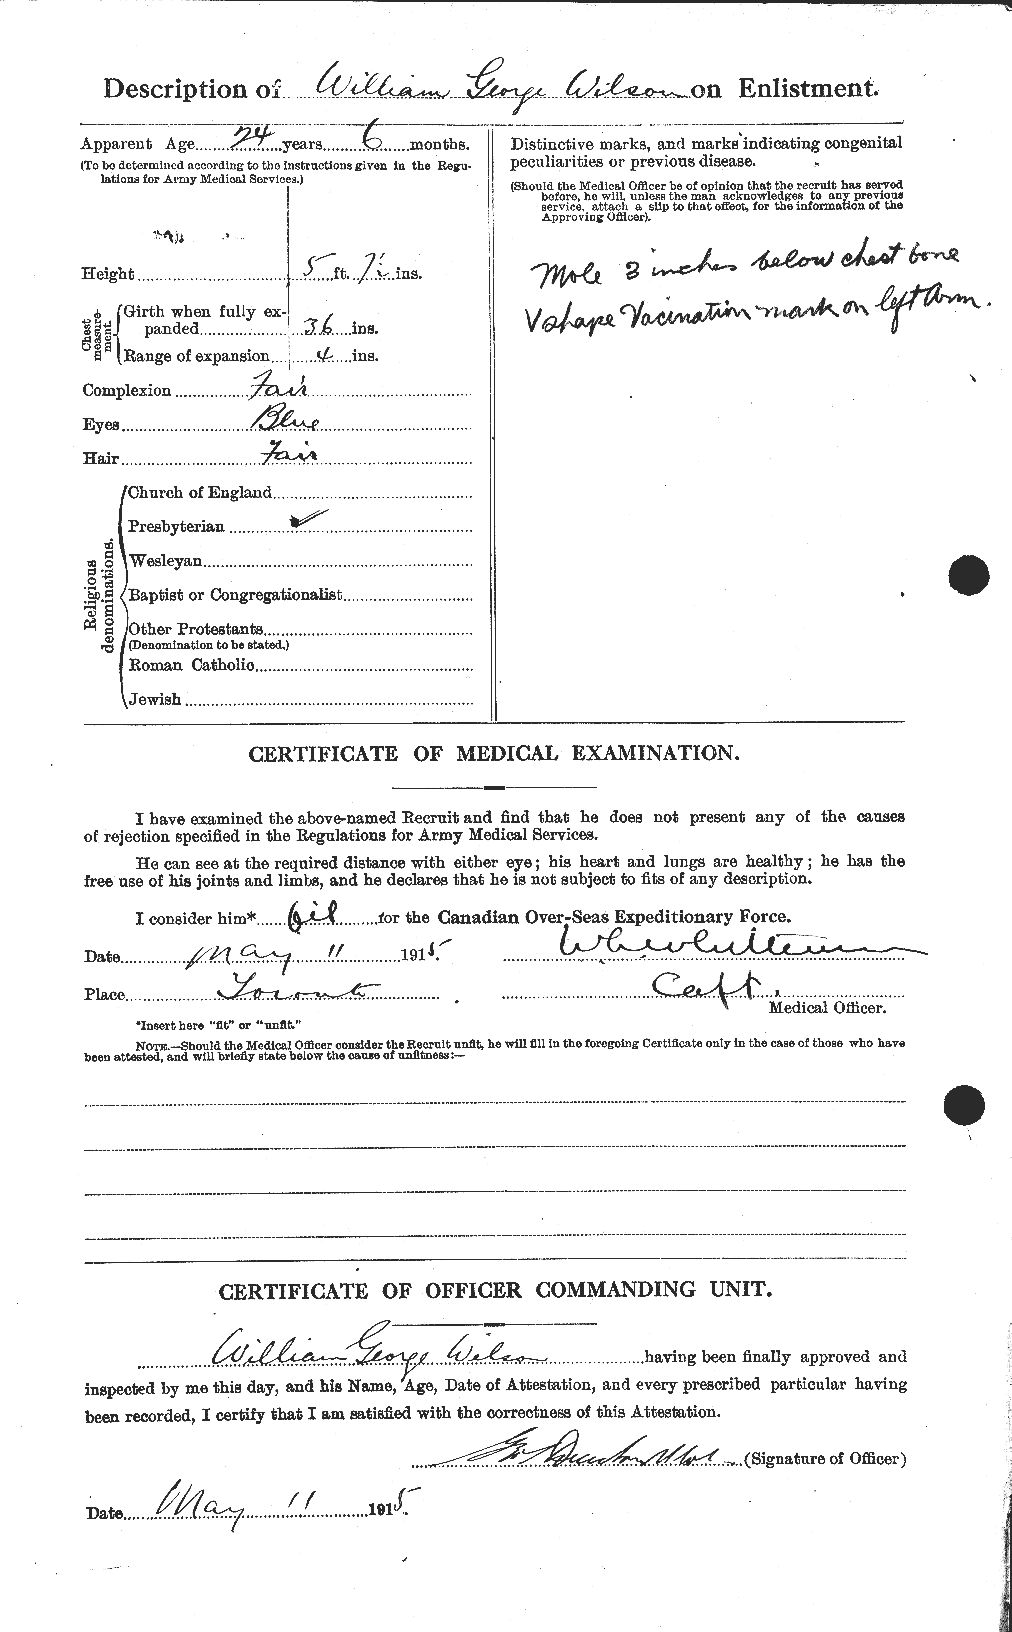 Dossiers du Personnel de la Première Guerre mondiale - CEC 681999b